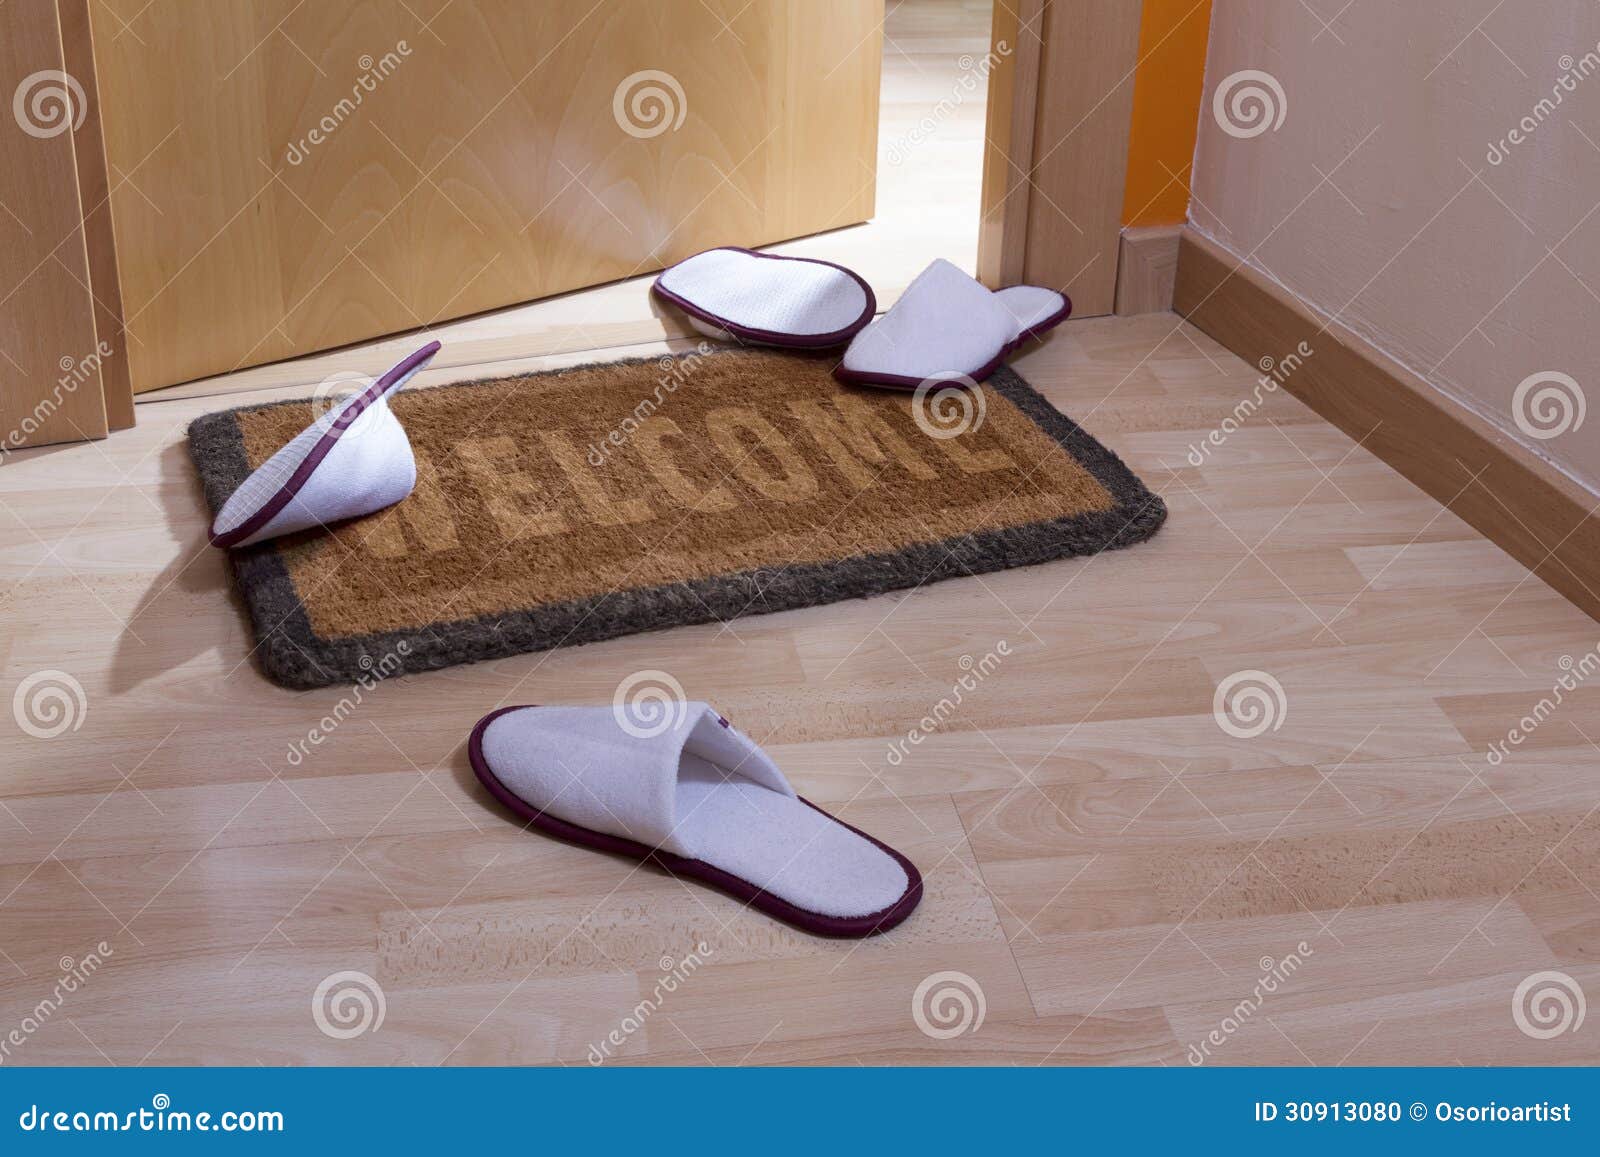 Welcome Home Doormat With Open Door Stock Photo - Image of house ...